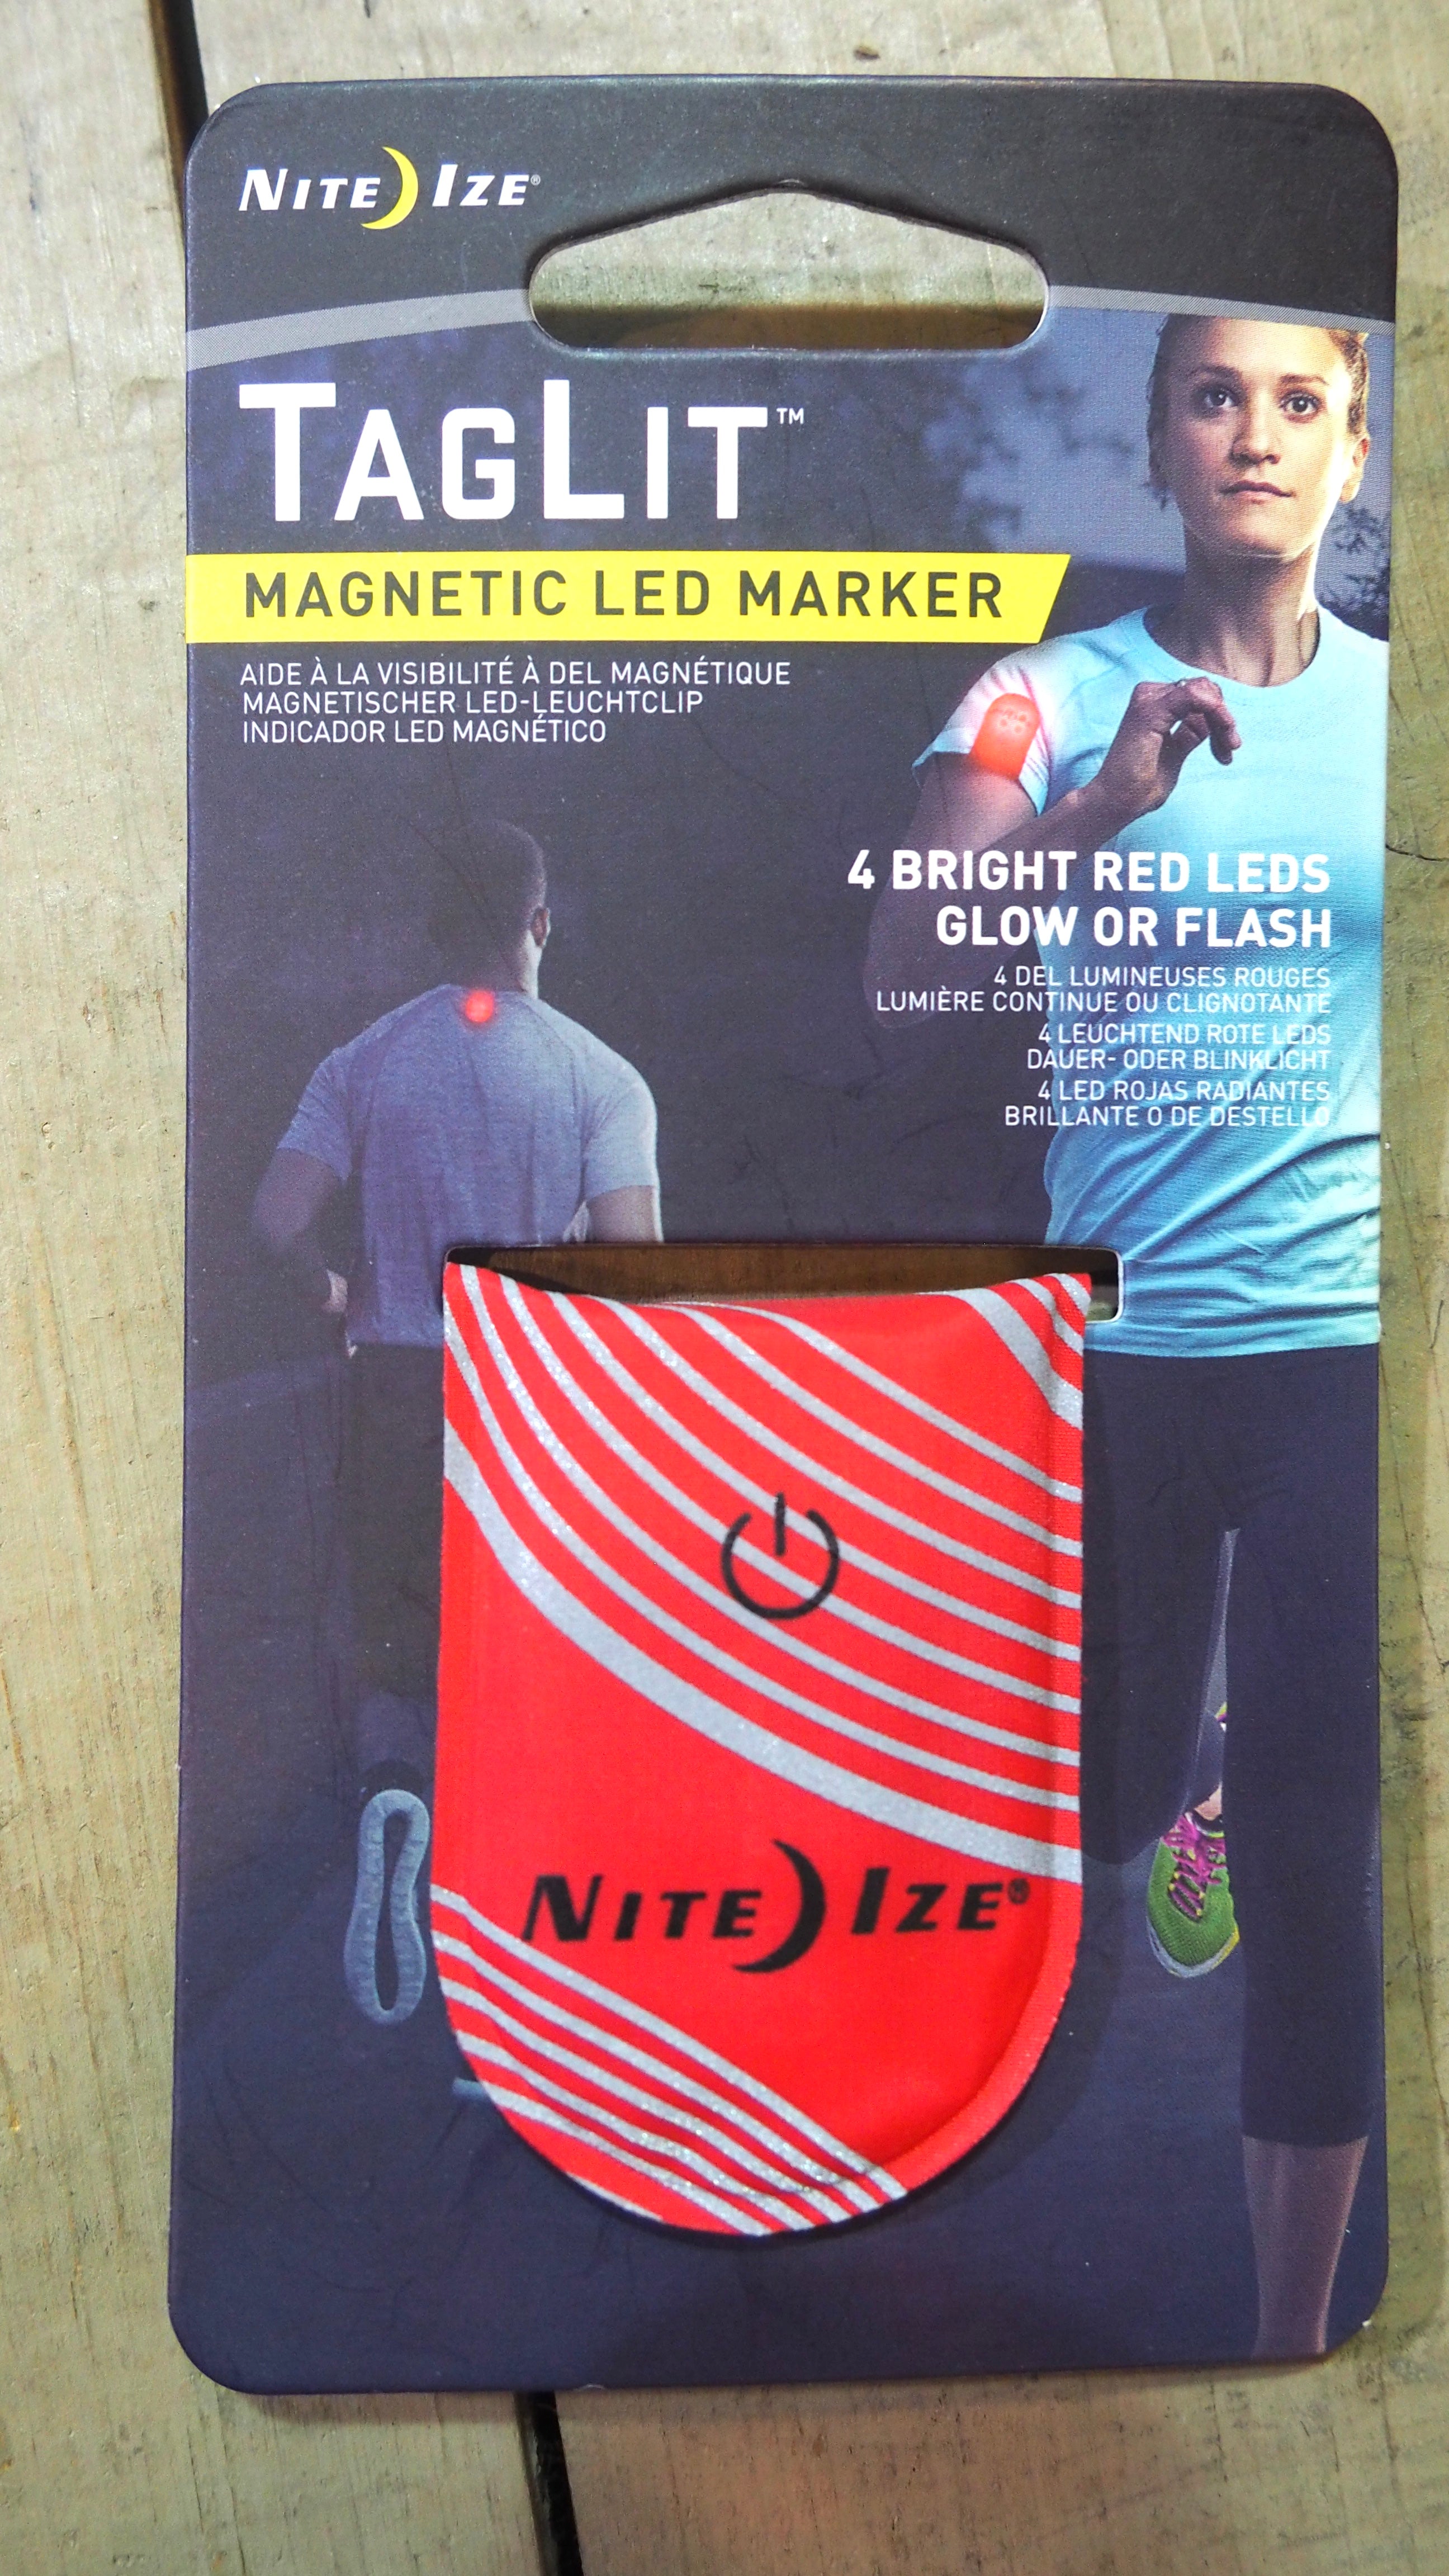 Nite Ize TagLit Magnetic LED Marker